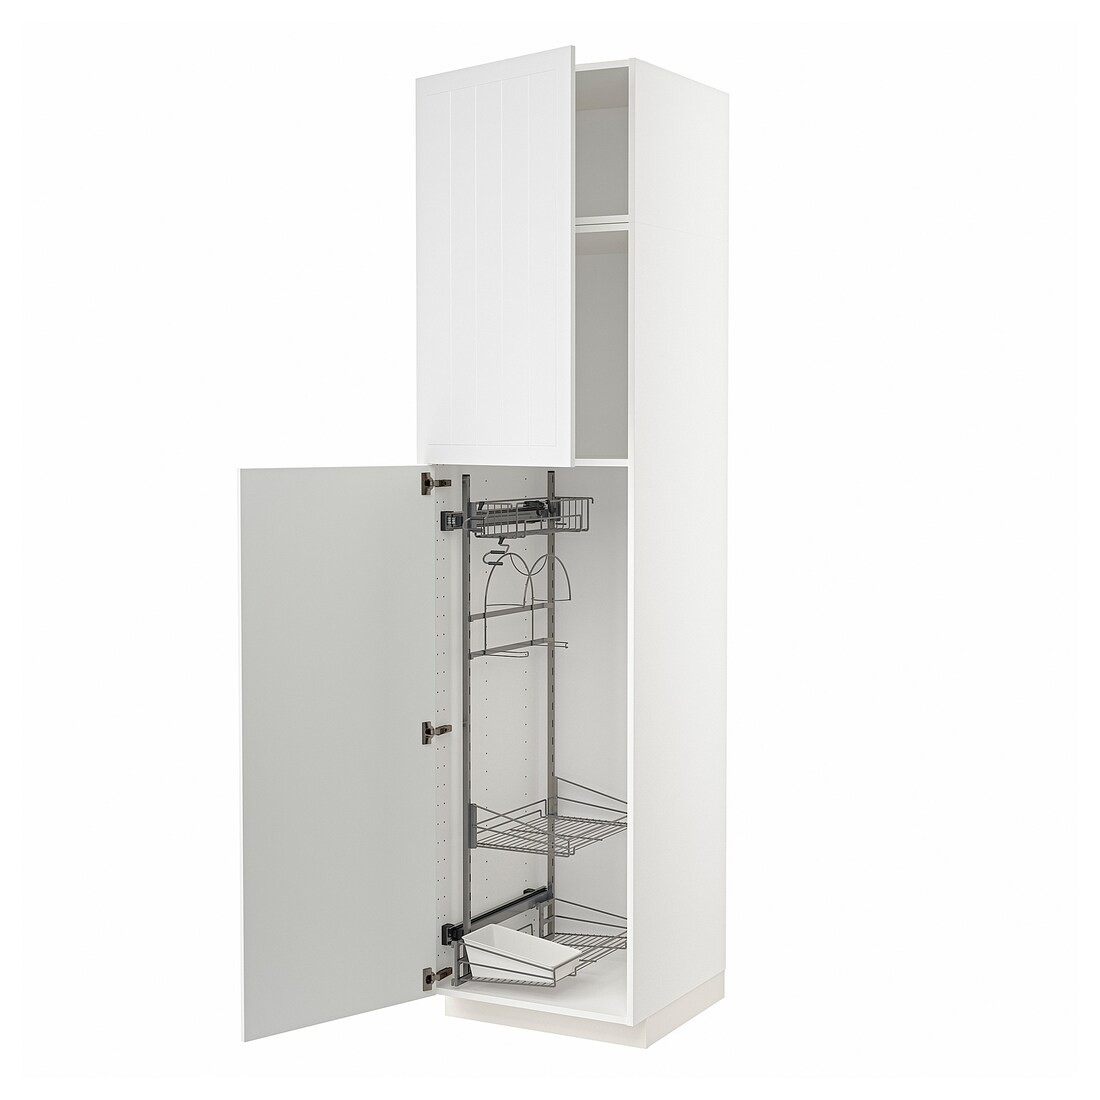 METOD МЕТОД Высокий шкаф с отделением для аксессуаров для уборки, белый / Stensund белый, 60x60x240 см